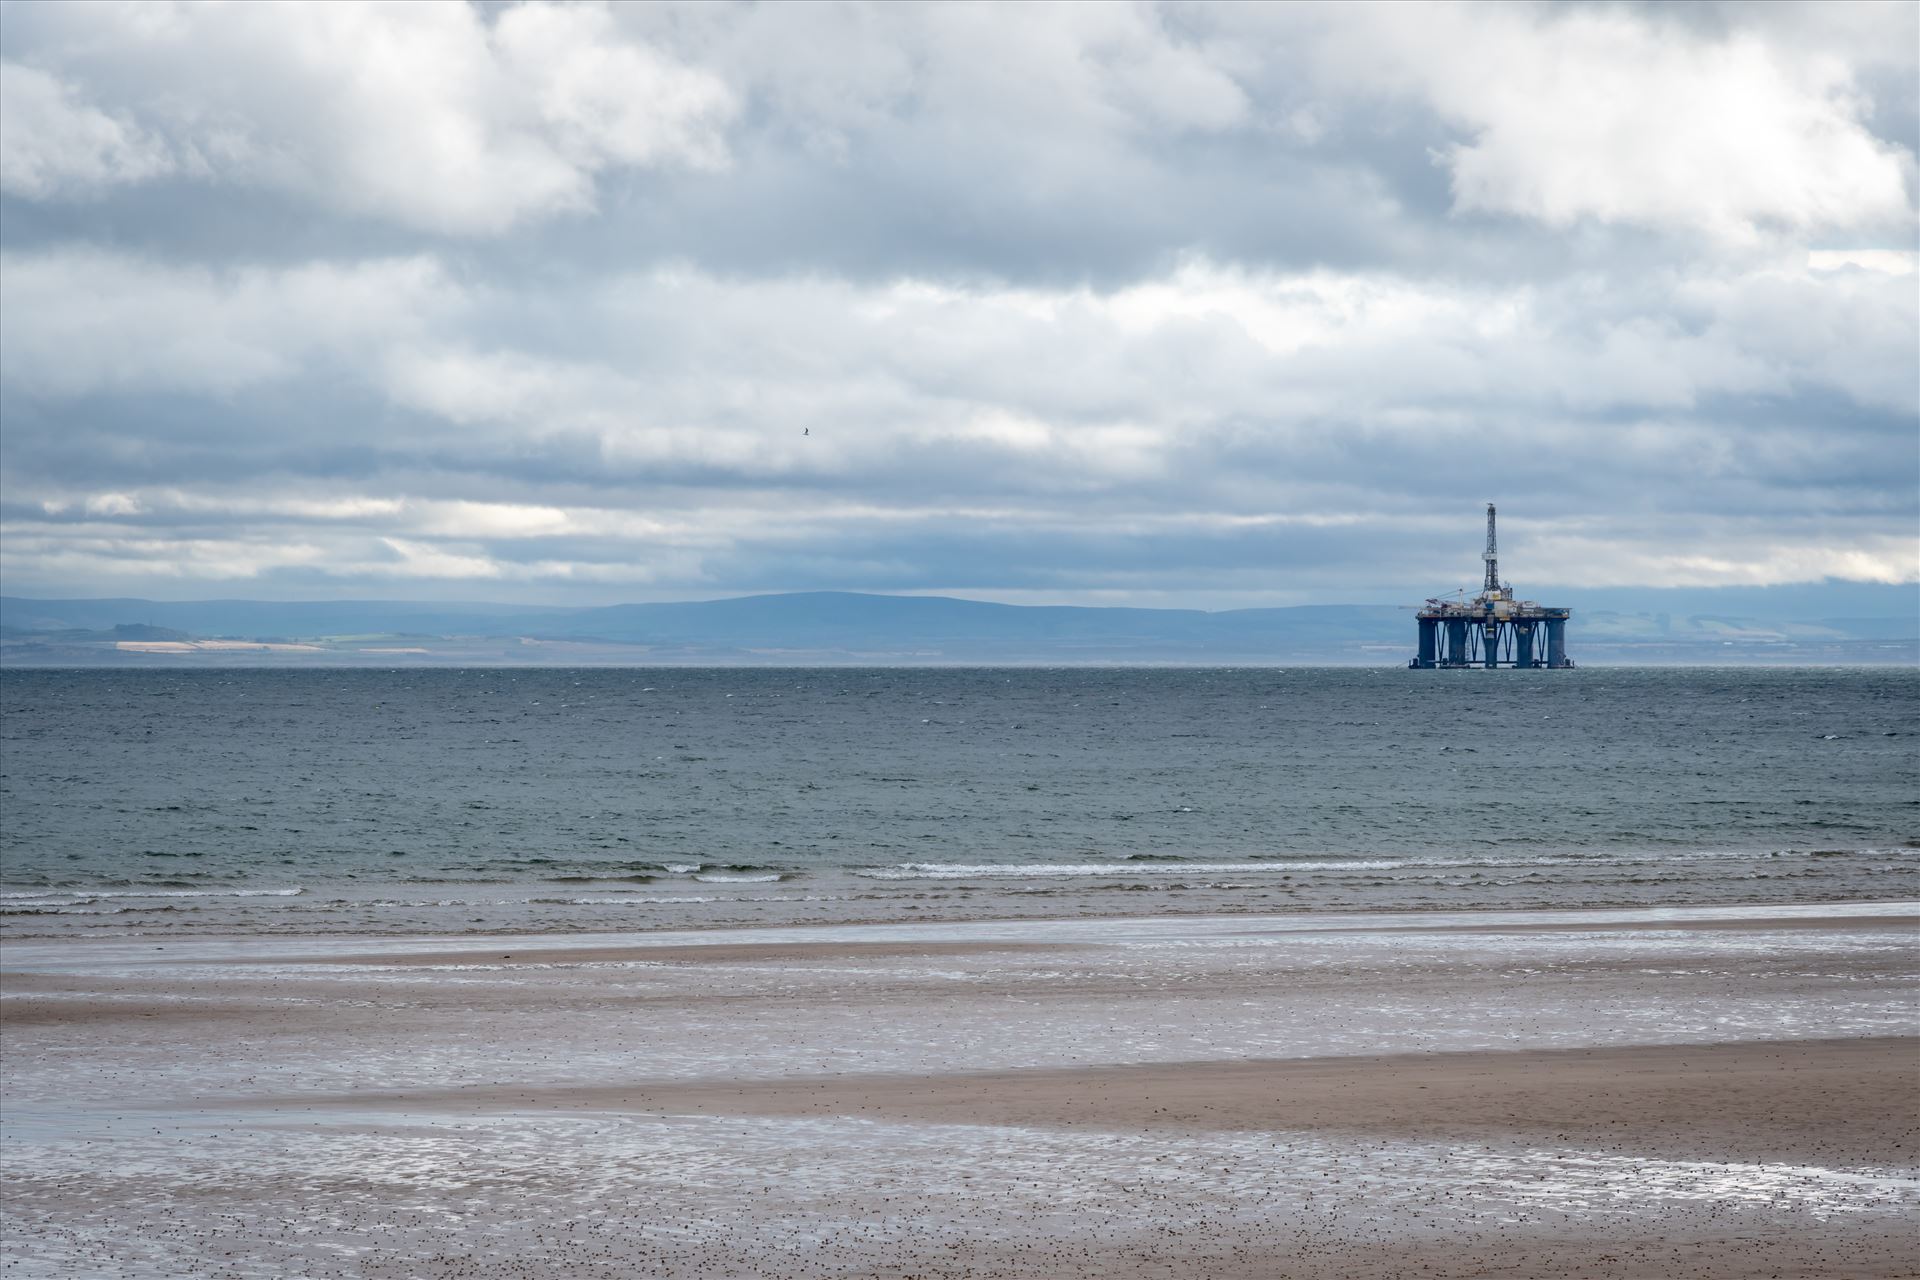 Oil Drilling rig, off Leven Bay, Scotland